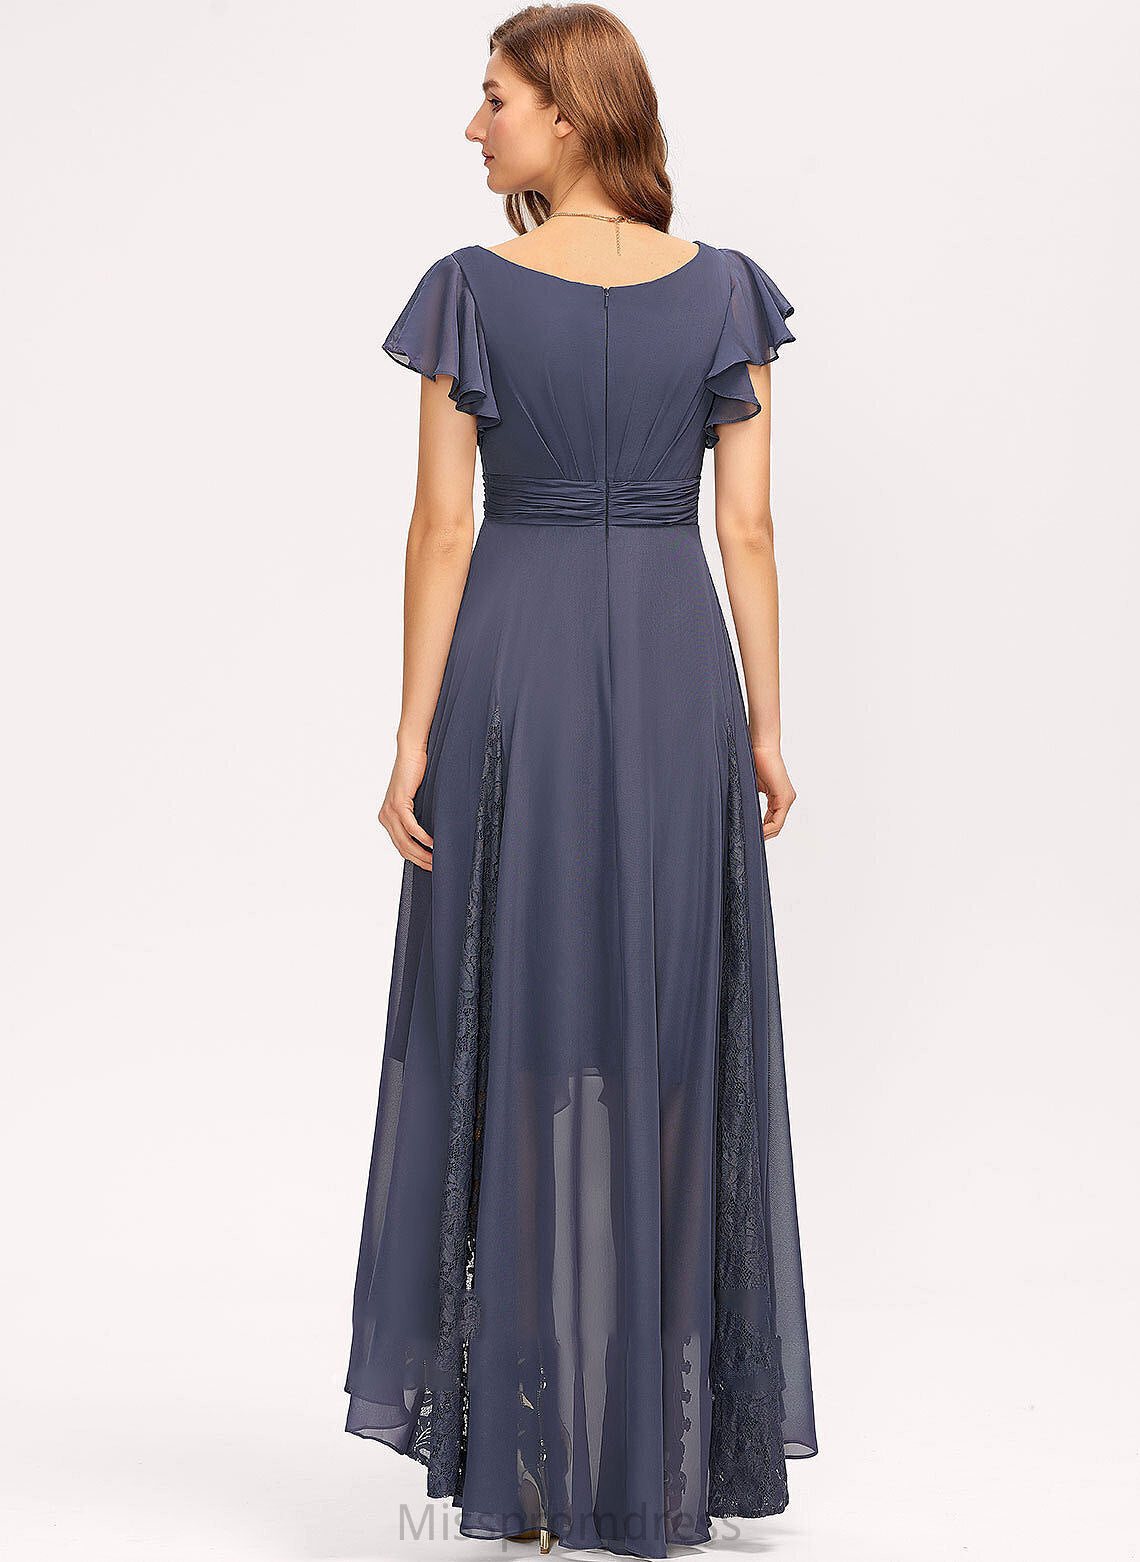 Asymmetrical Embellishment A-Line Ruffle V-neck Lace Neckline Silhouette Fabric Length Virginia A-Line/Princess Bridesmaid Dresses